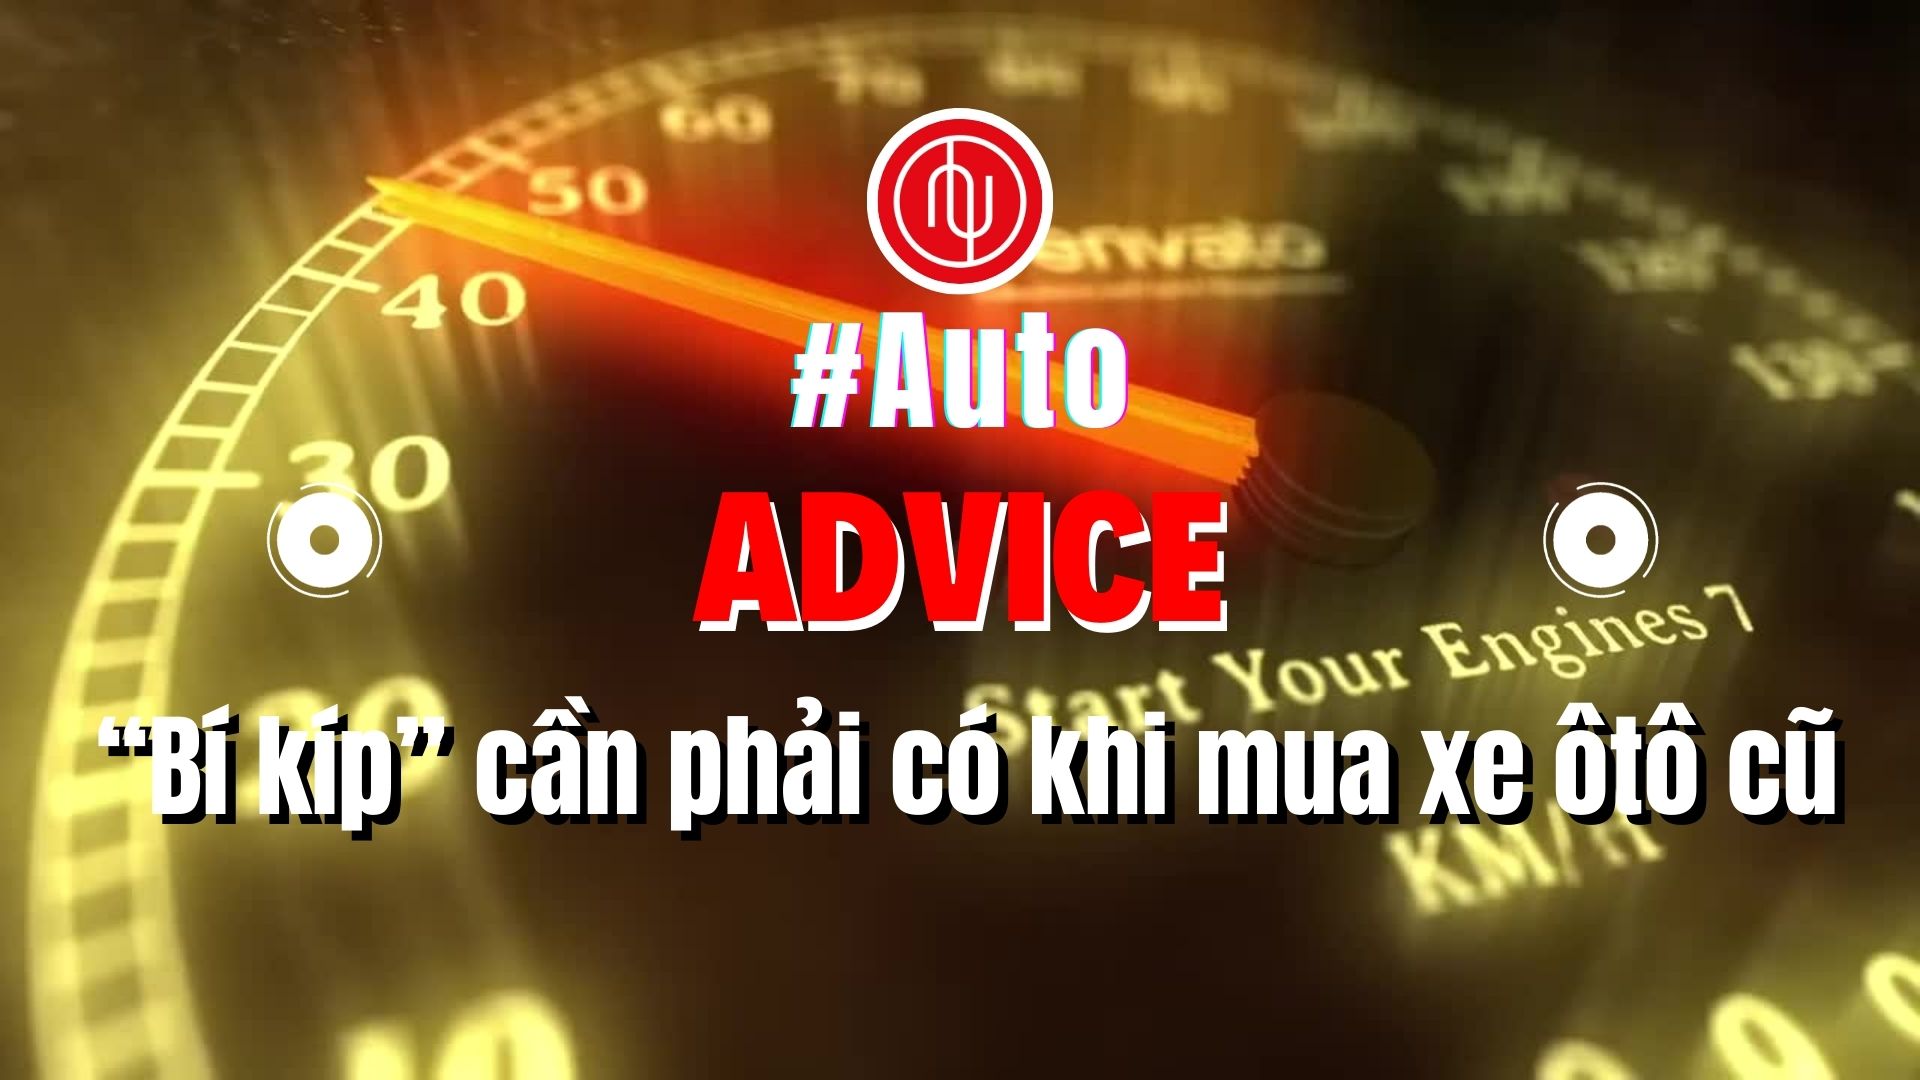 #Auto Advice: “Bí kíp” cần phải có khi mua xe ô tô cũ